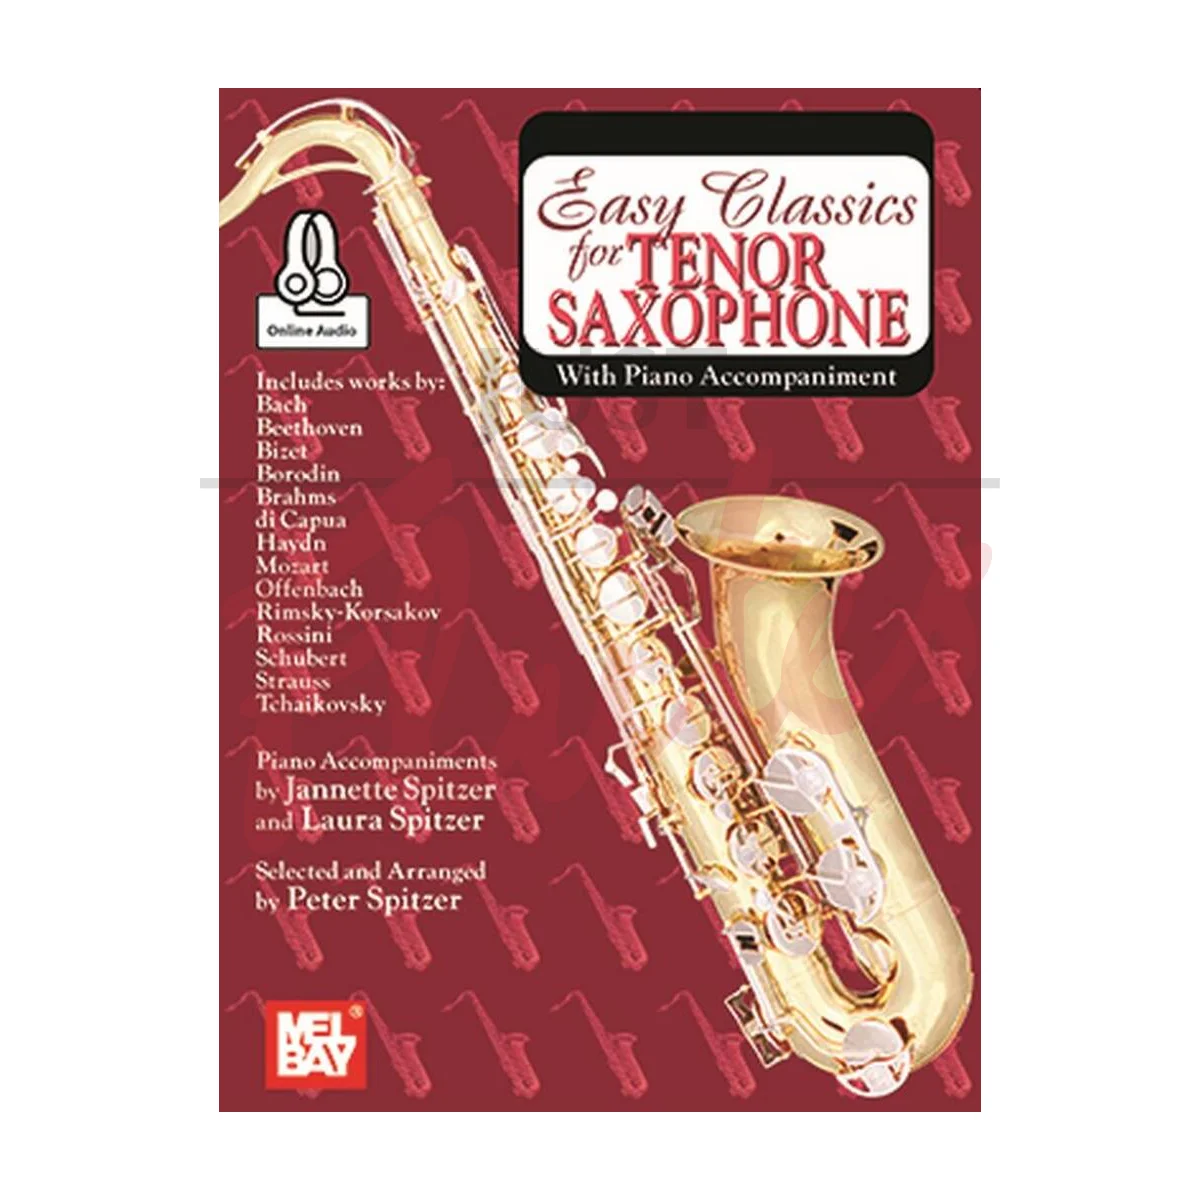 Easy Classics for Tenor Saxophone